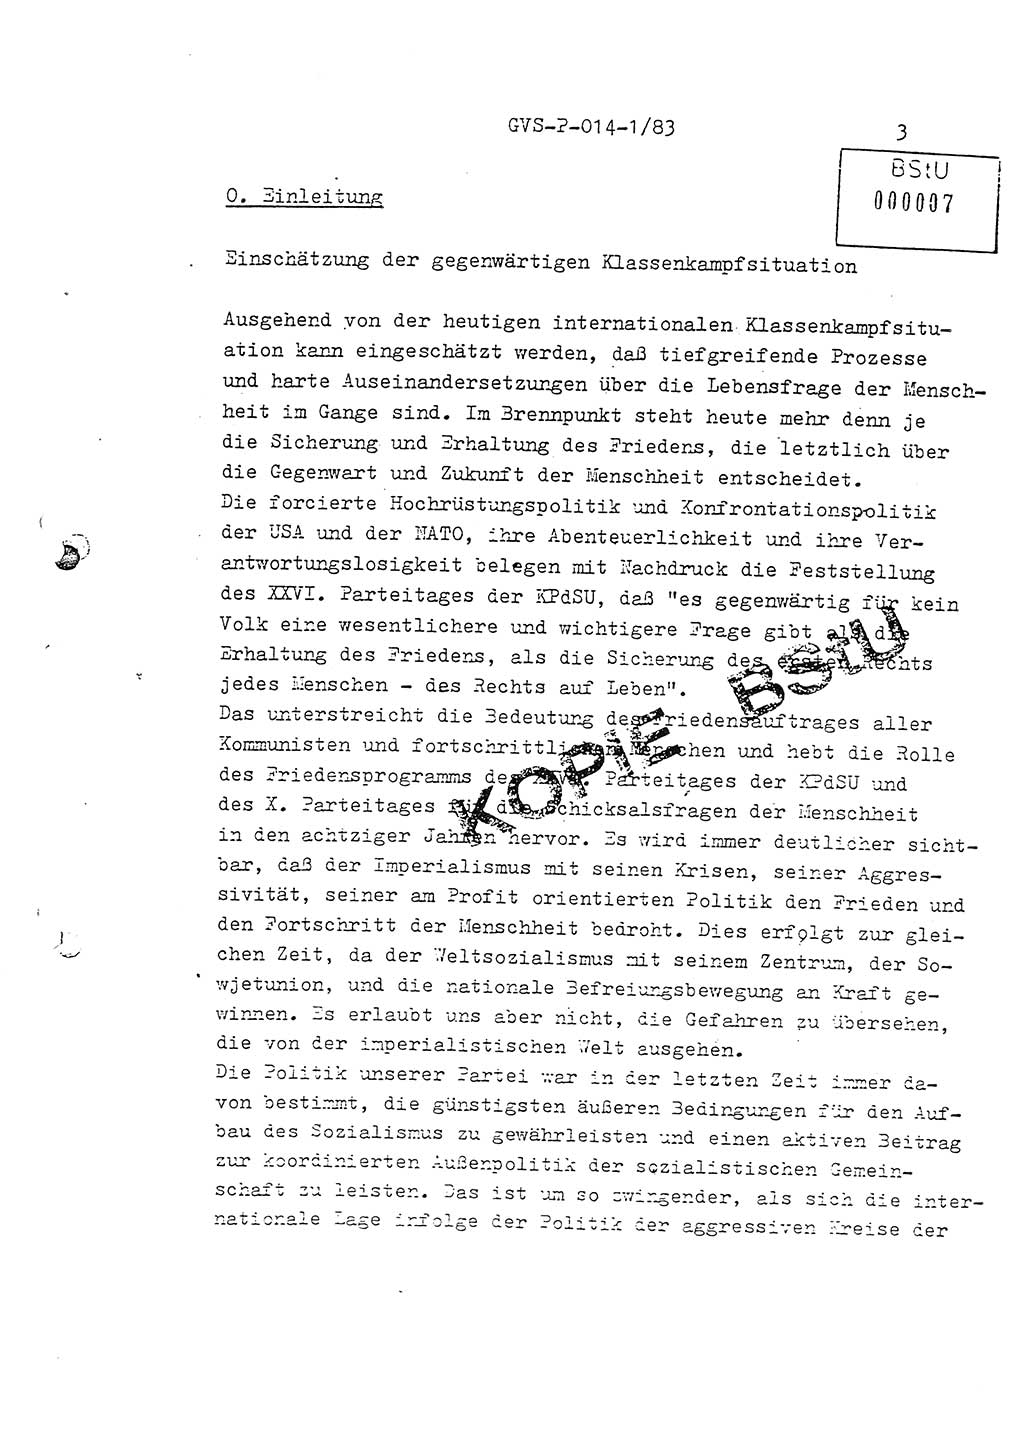 Fachschulabschlußarbeit Leutnant Dirk Autentrieb (HA Ⅸ/AKG), Ministerium für Staatssicherheit (MfS) [Deutsche Demokratische Republik (DDR)], Hauptabteilung (HA) Ⅸ, Geheime Verschlußsache (GVS) P-014-1/83, Berlin 1983, Blatt 3 (FS-Abschl.-Arb. MfS DDR HA Ⅸ GVS P-014-1/83 1983, Bl. 3)